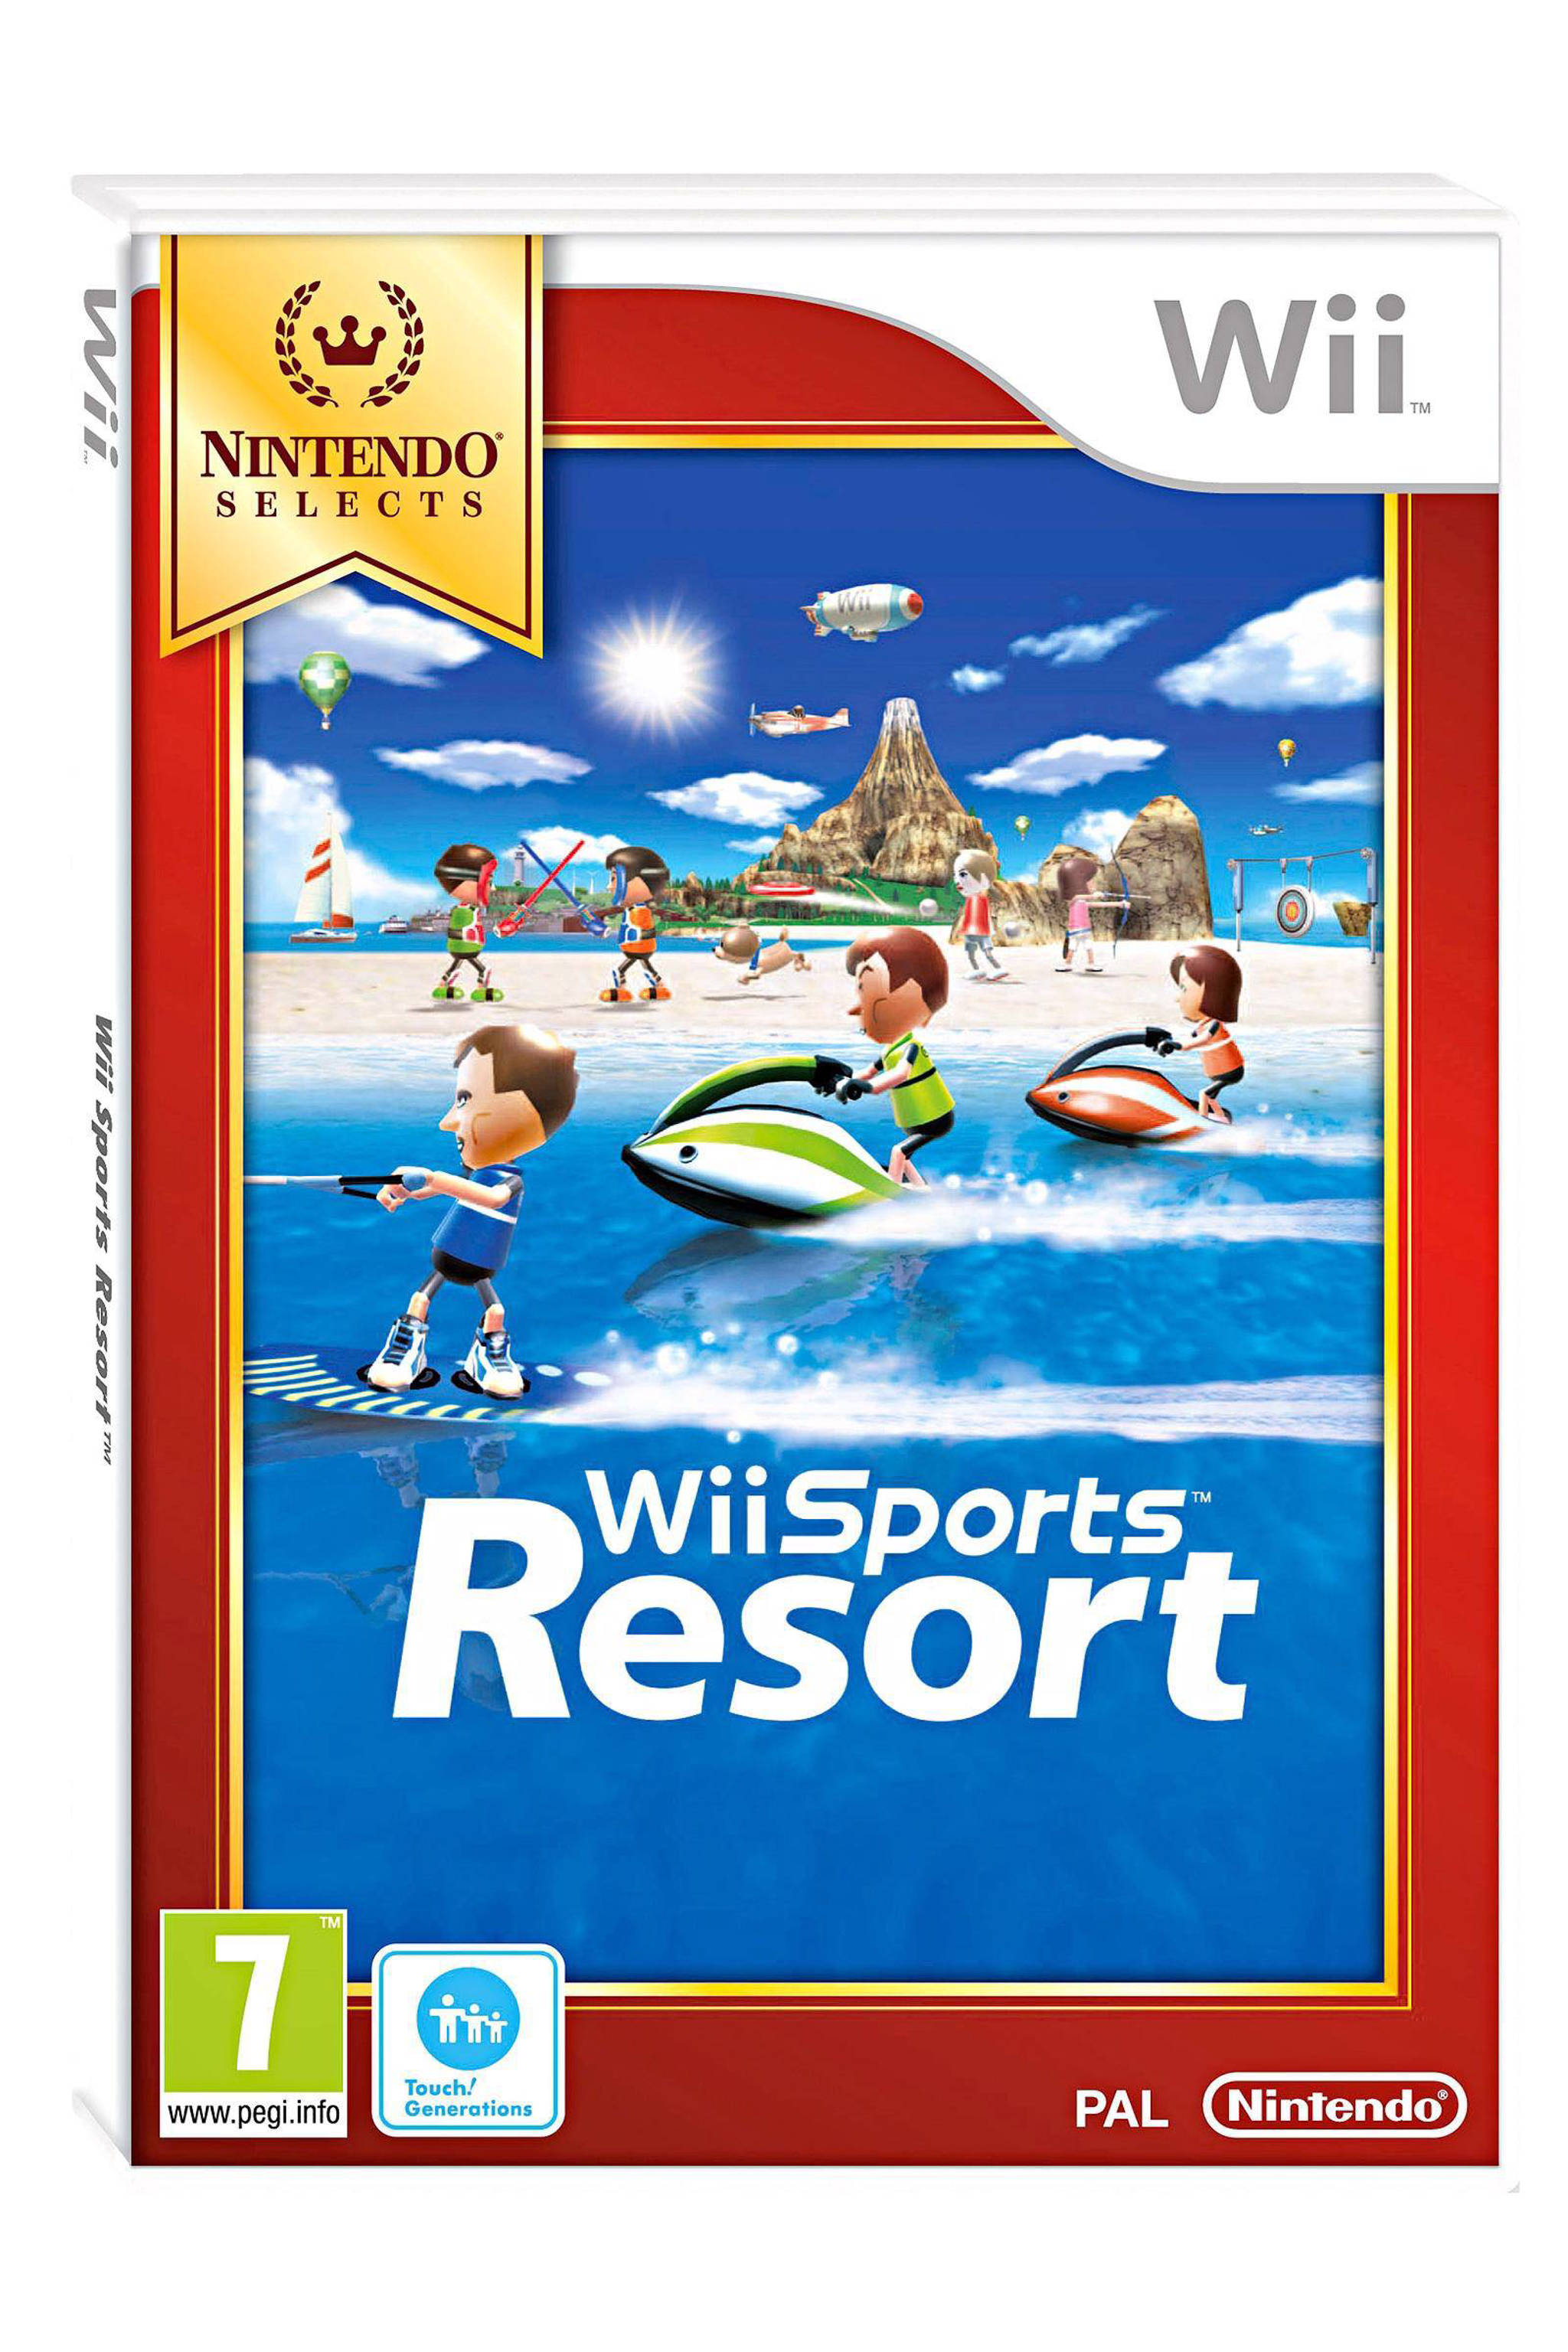 Grootste Is aan het huilen Necklet Nintendo Wii Wii Sports Resort Select (Wii U) (Nintendo Wii) | wehkamp